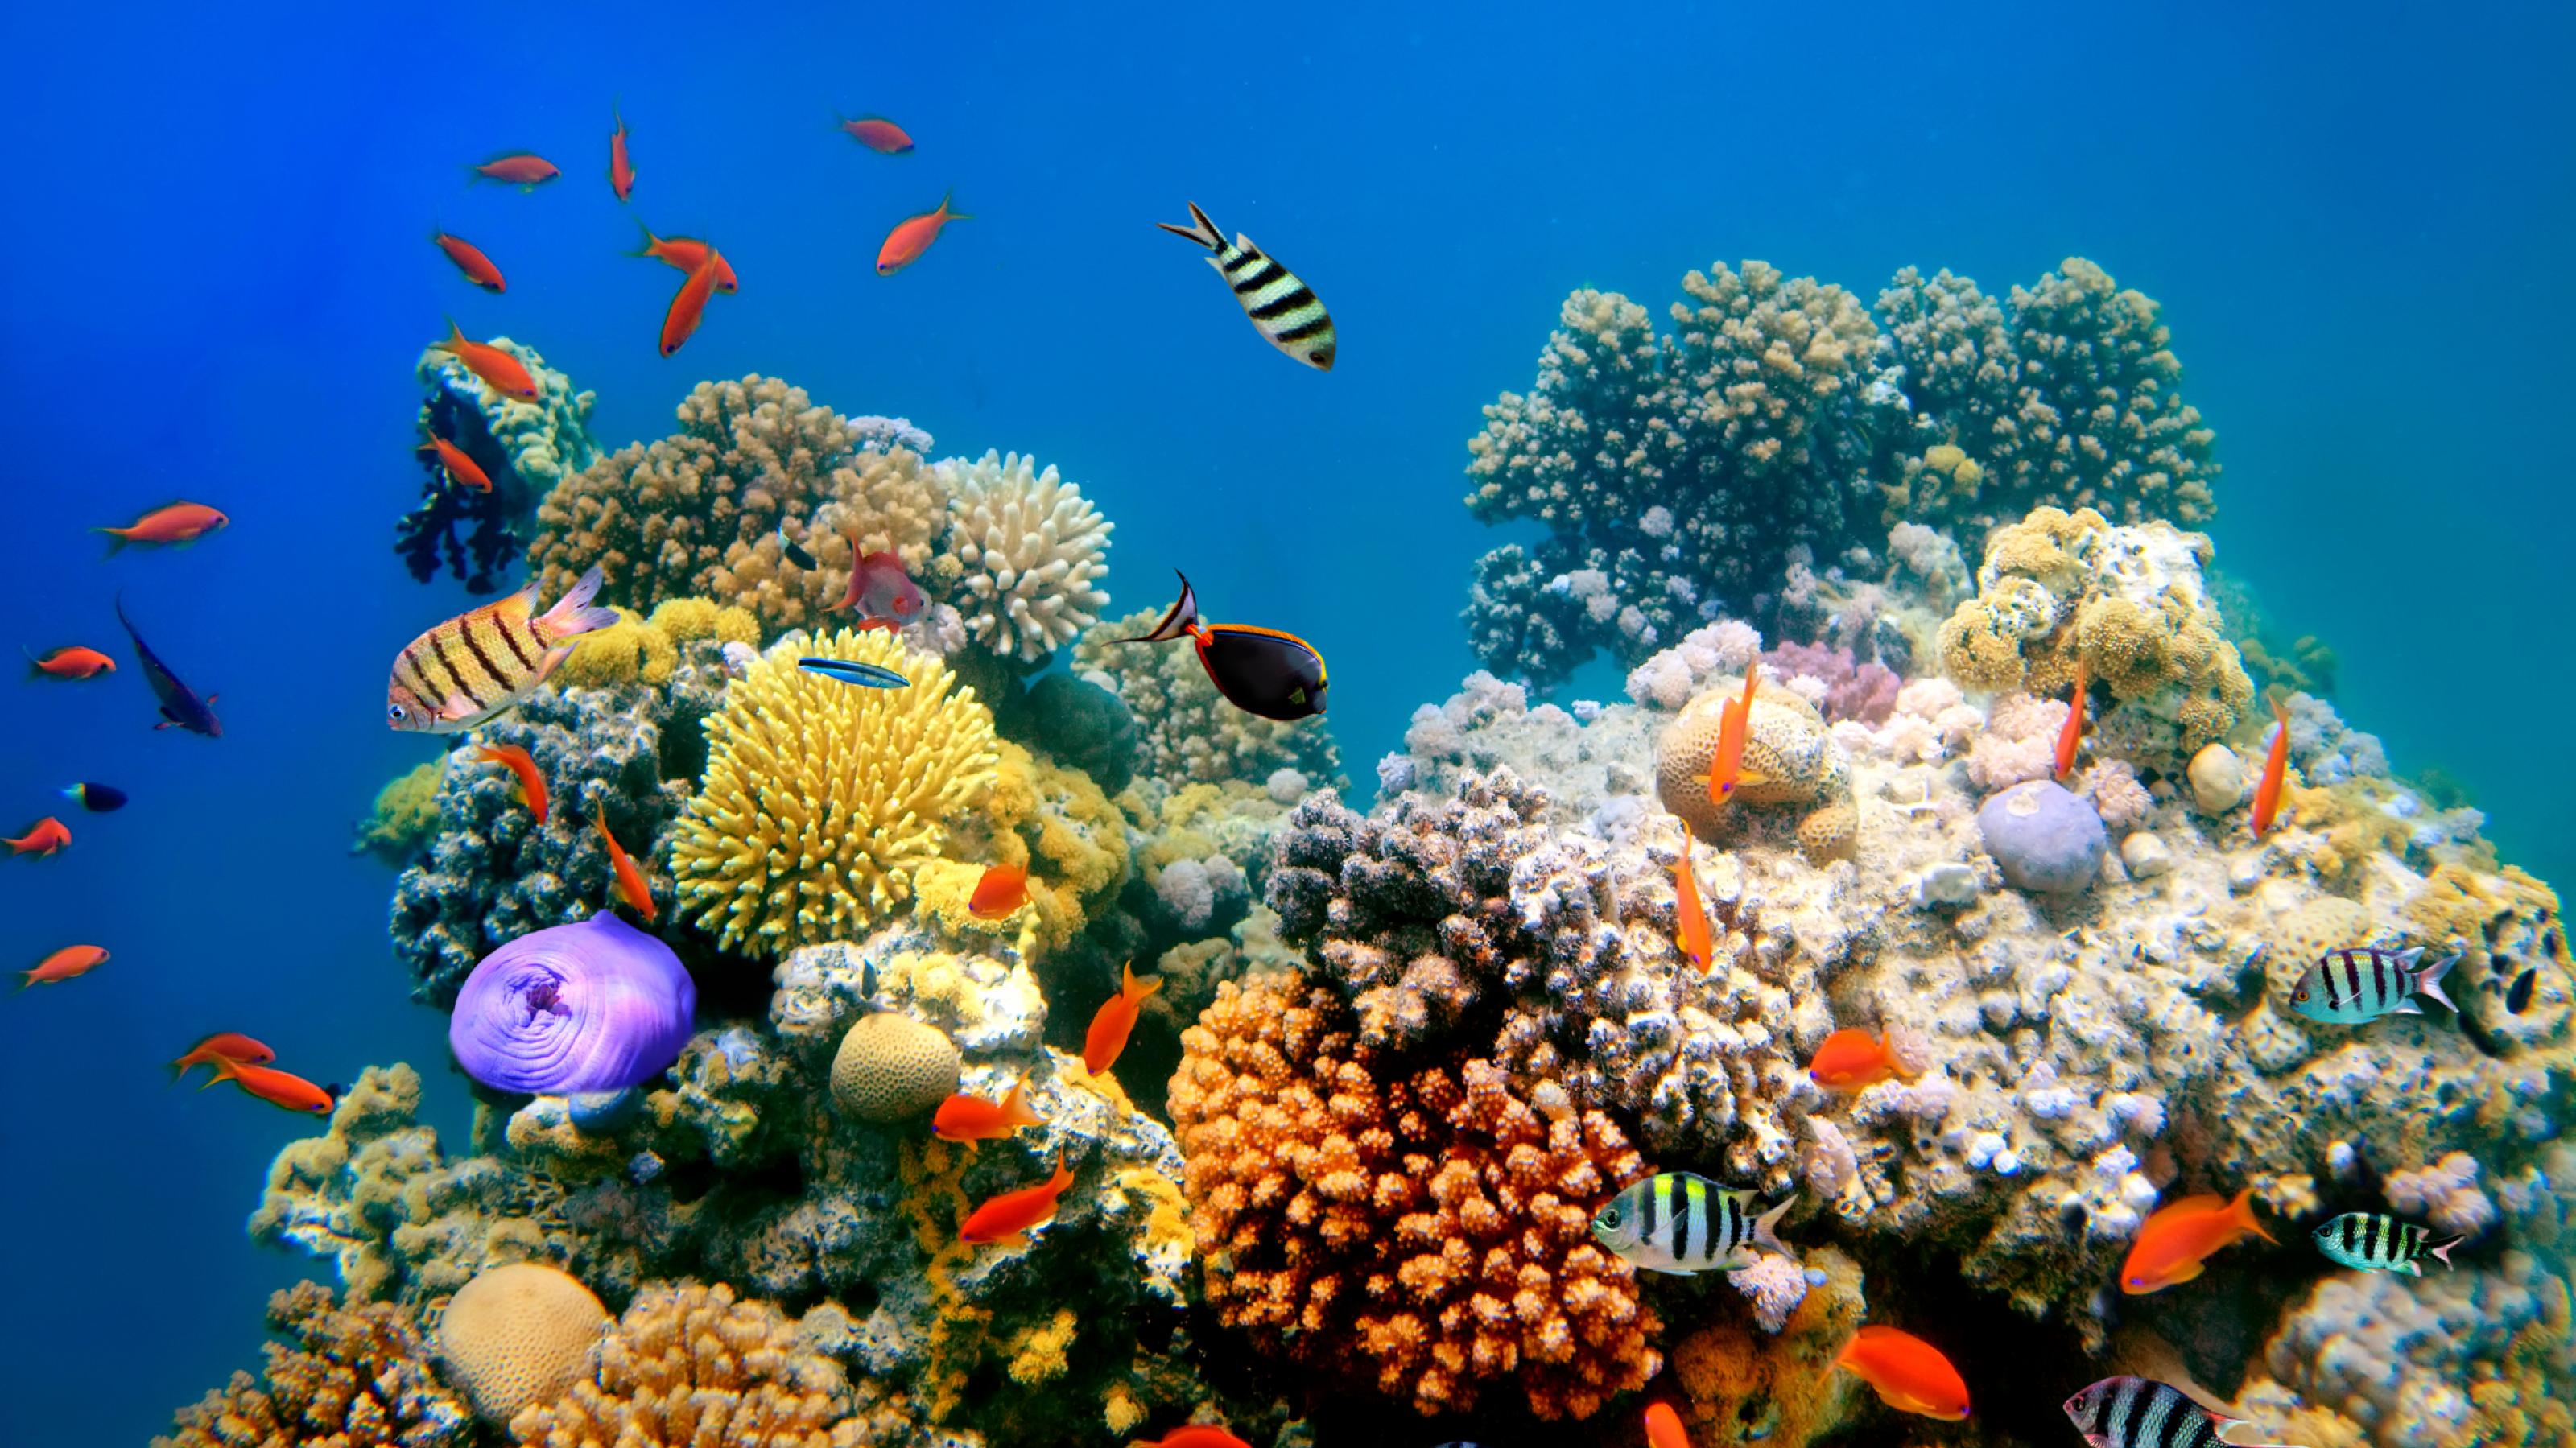 Ein tropisches Korallenriff mit den typischen verzweigten Wuchsformen und vielen sehr bunten Fischen.